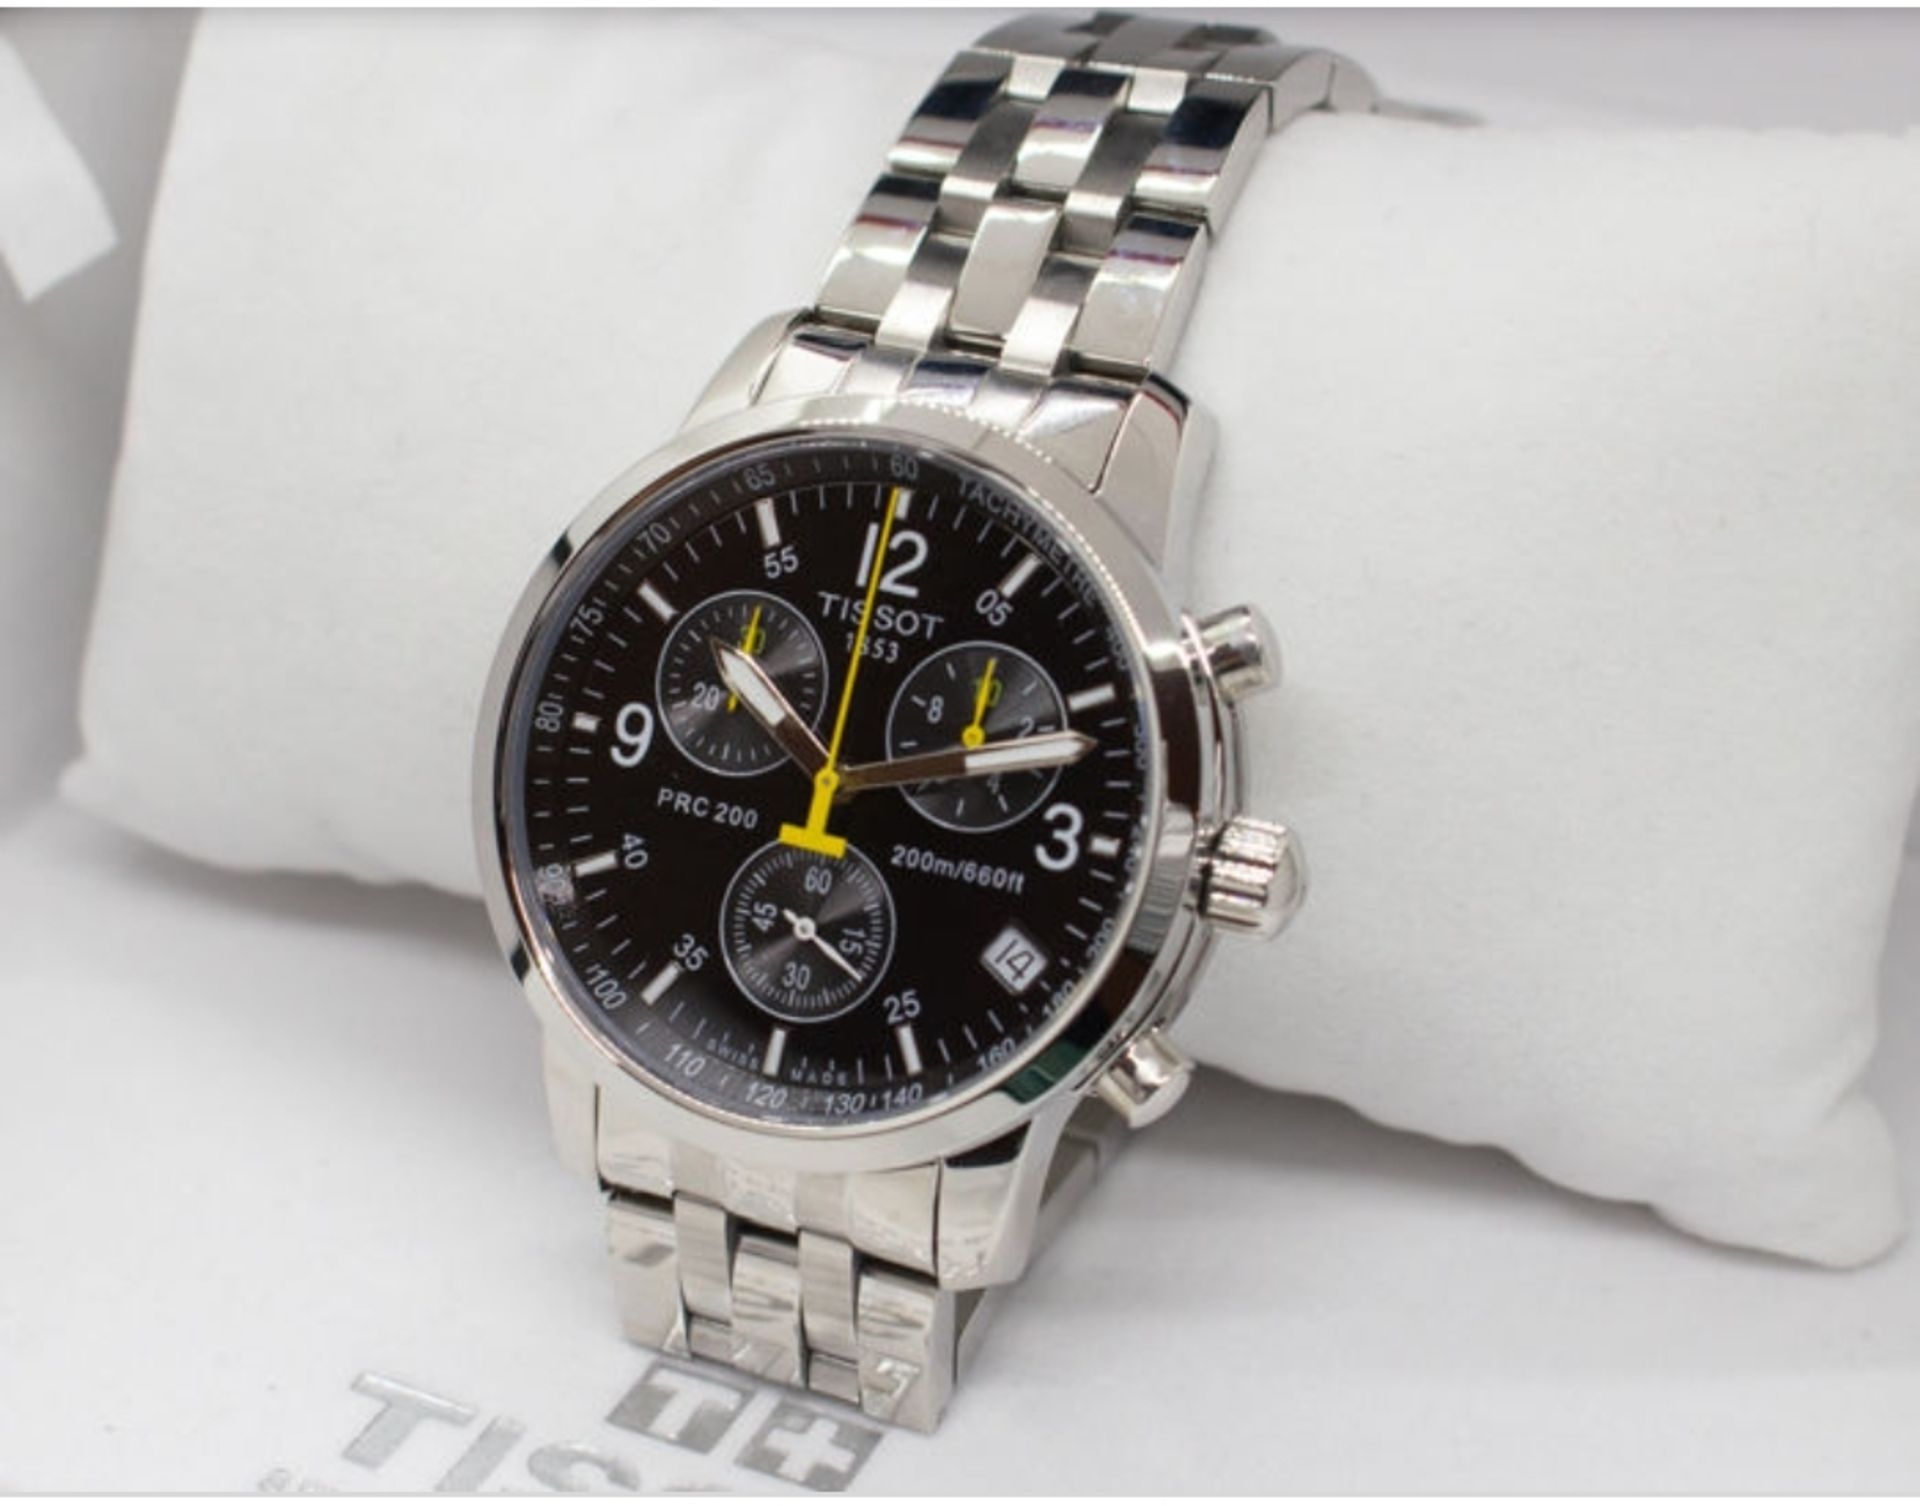 Tissot T17.1.586.52 PRC 200 Men's Chronograph Quartz Watch - Image 6 of 11